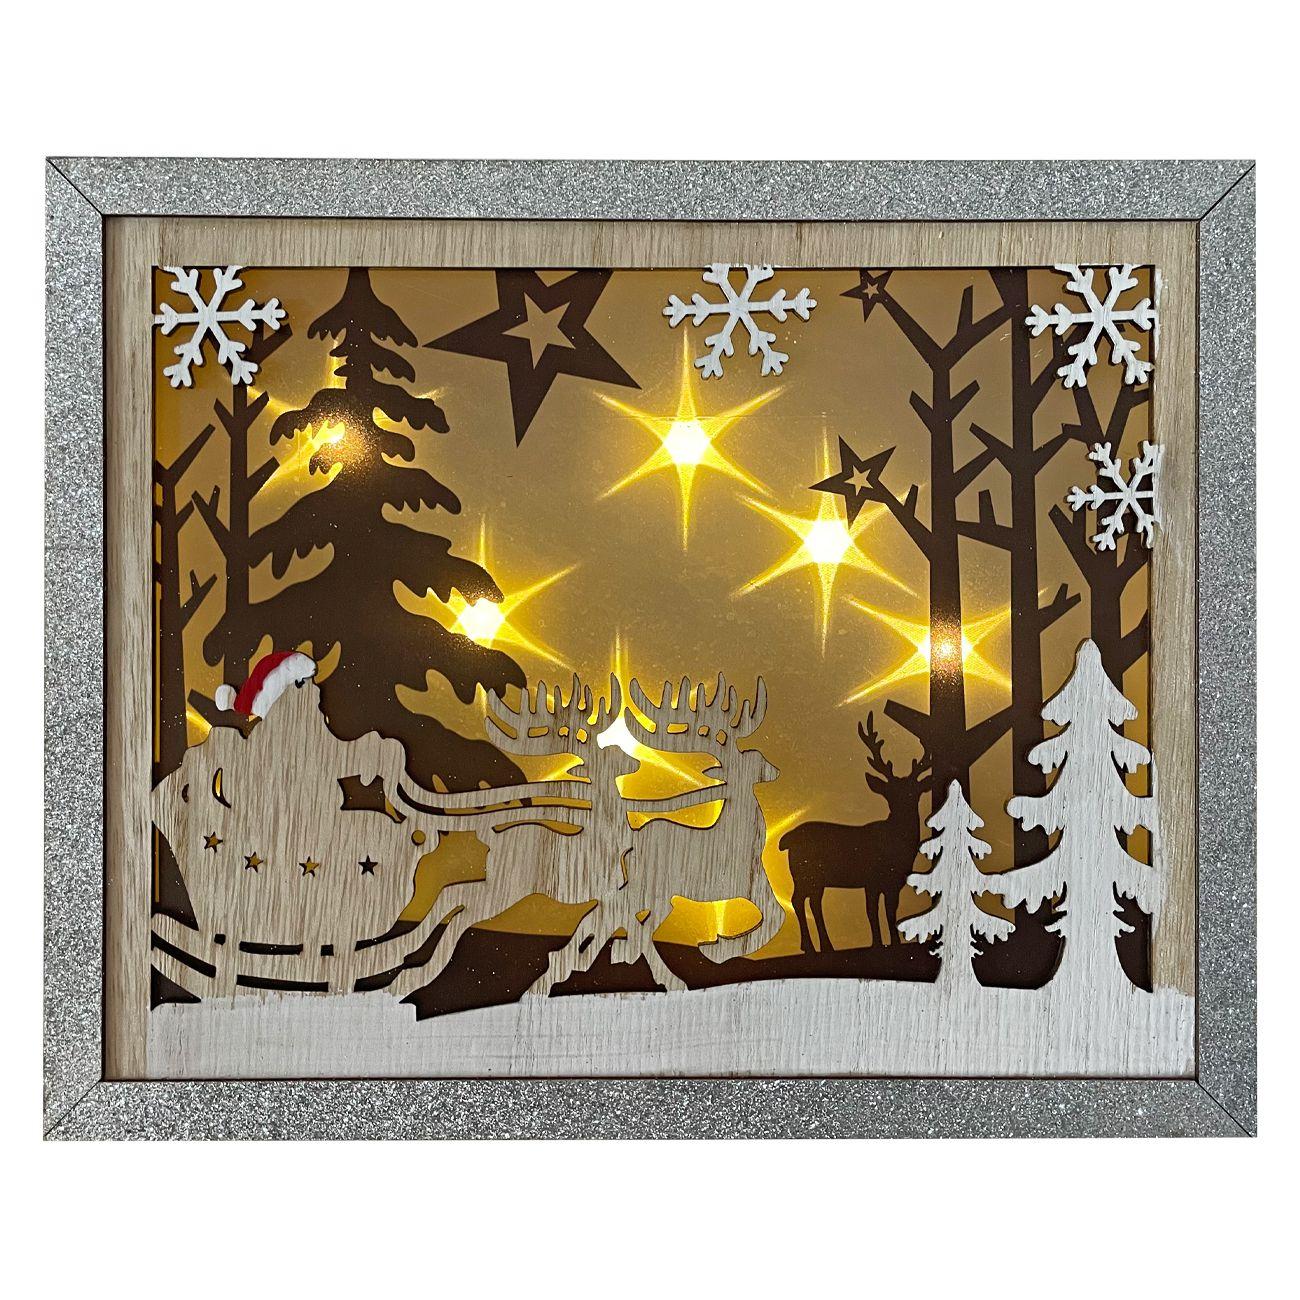 DENIS Led drvena dekoracija Deda Mraz i Irvasi 30x24 cm braon